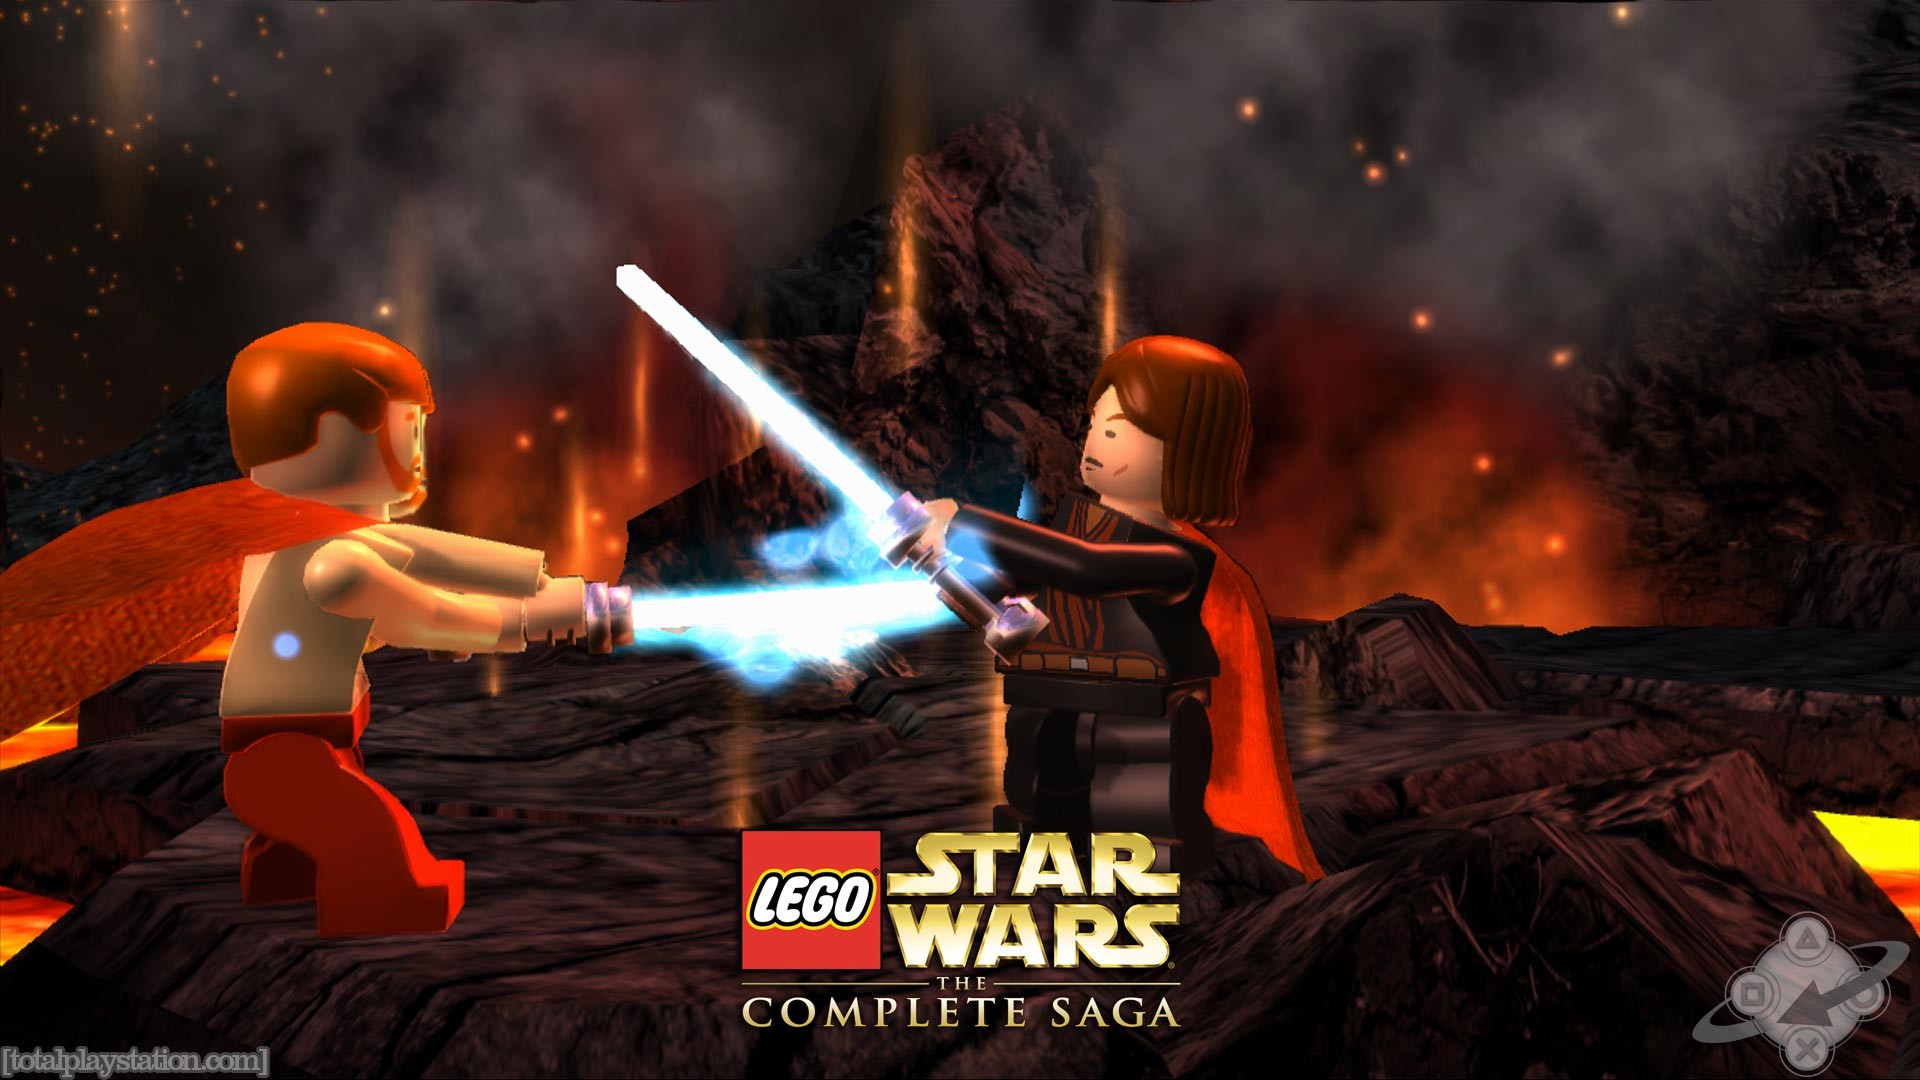 Star Wars LEGO LEGO Star Wars Video Games 1920x1080